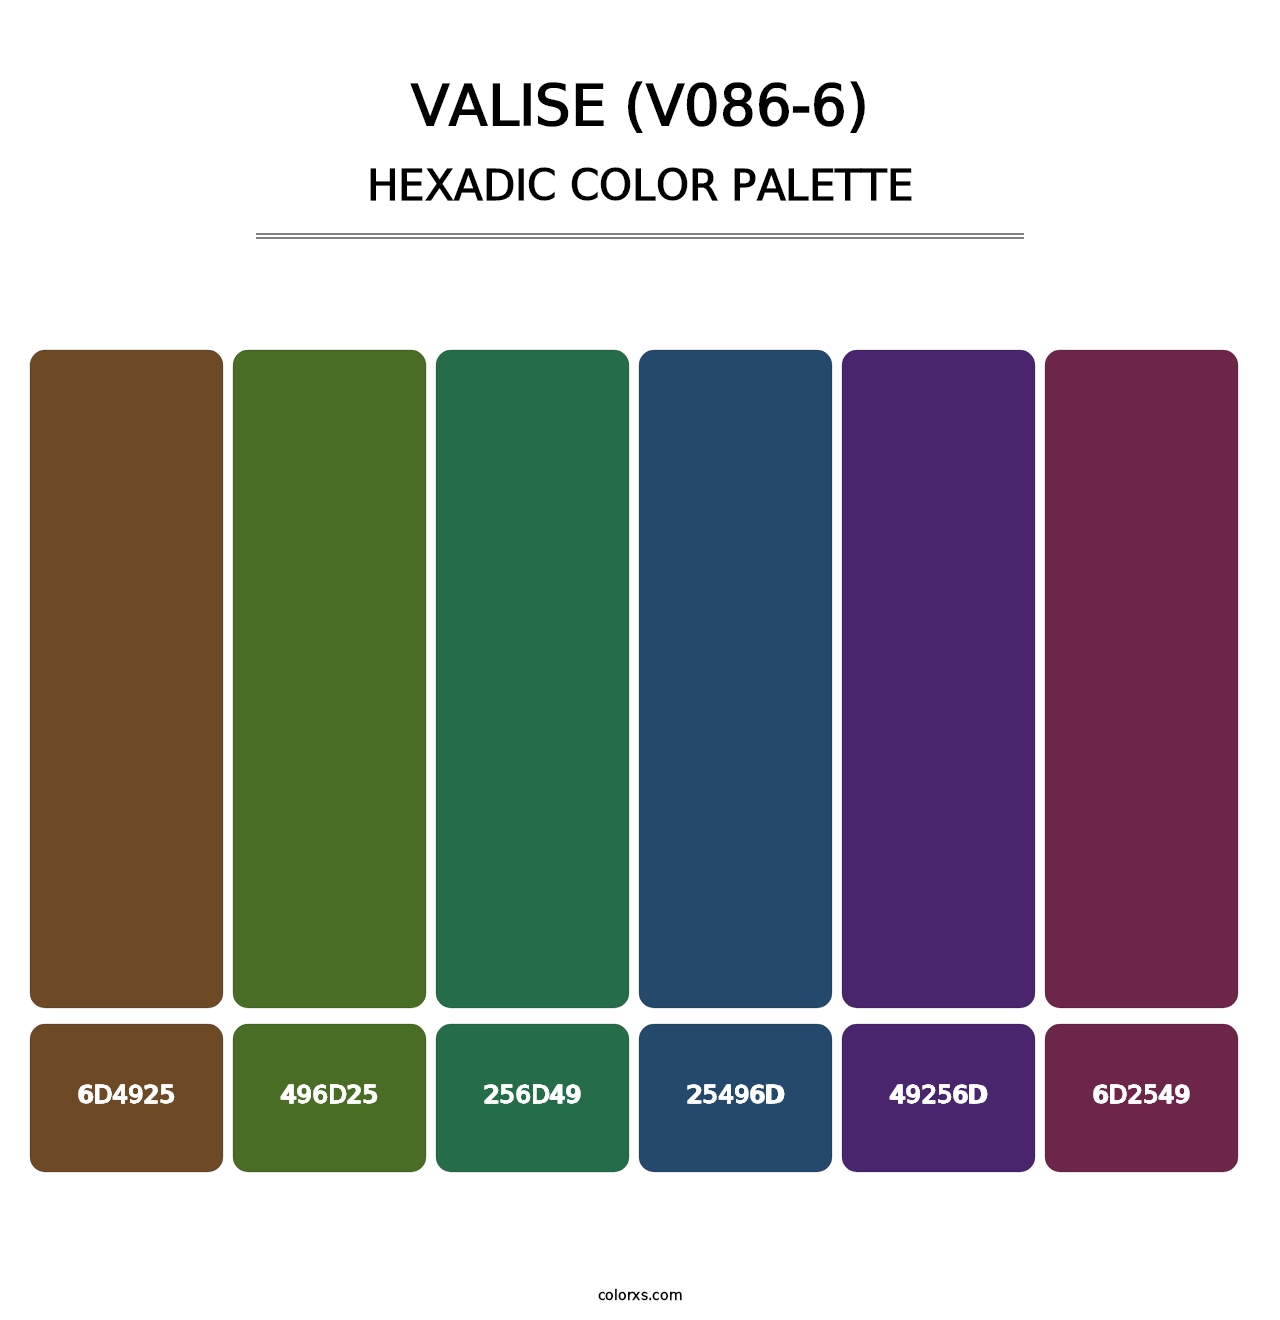 Valise (V086-6) - Hexadic Color Palette